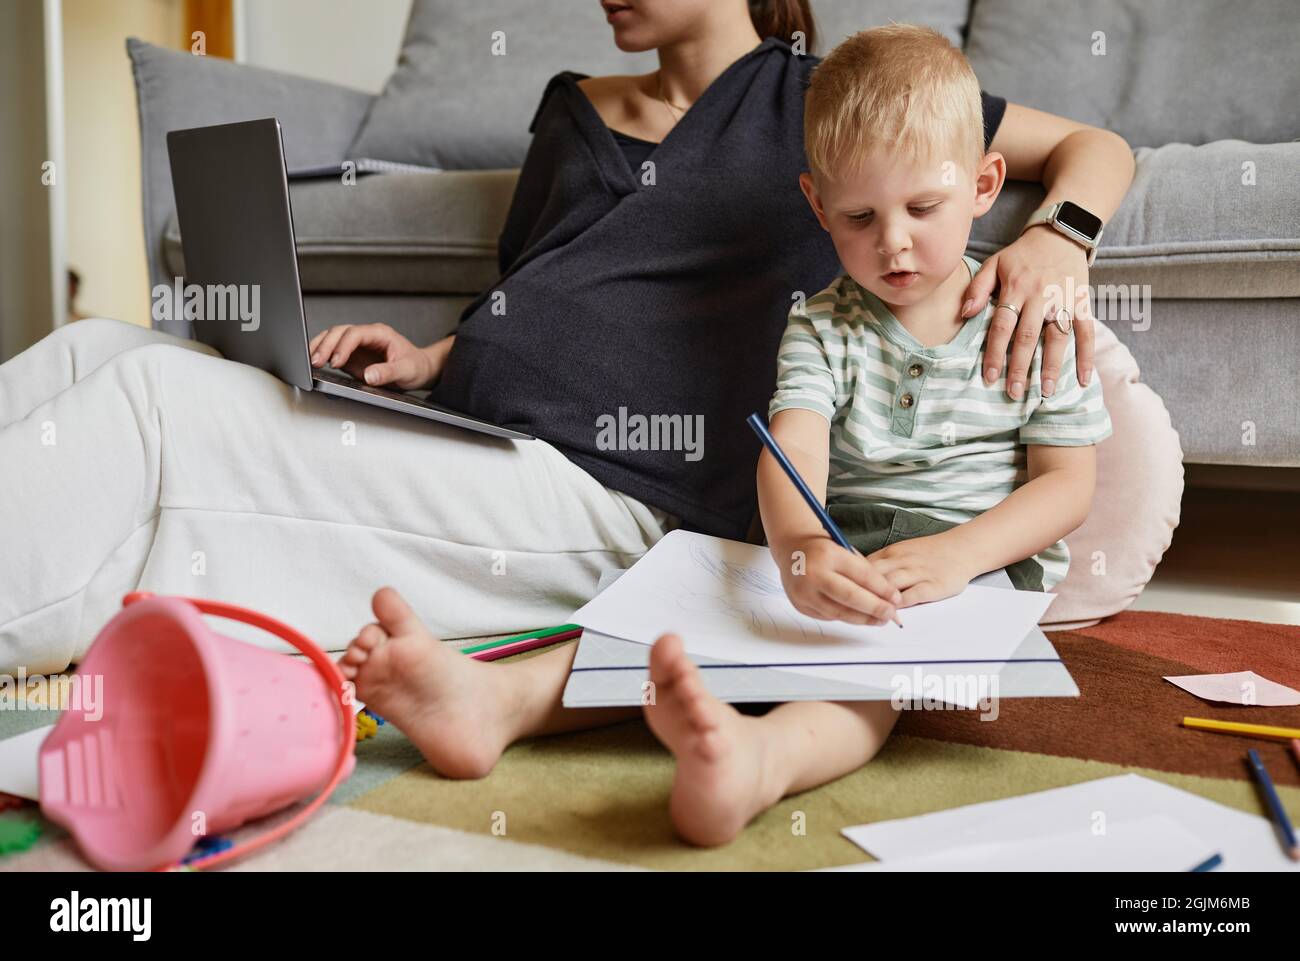 Petit fils indépendant concentré assis sur le sol et de dessiner pendant que sa mère travaille avec un ordinateur portable Banque D'Images